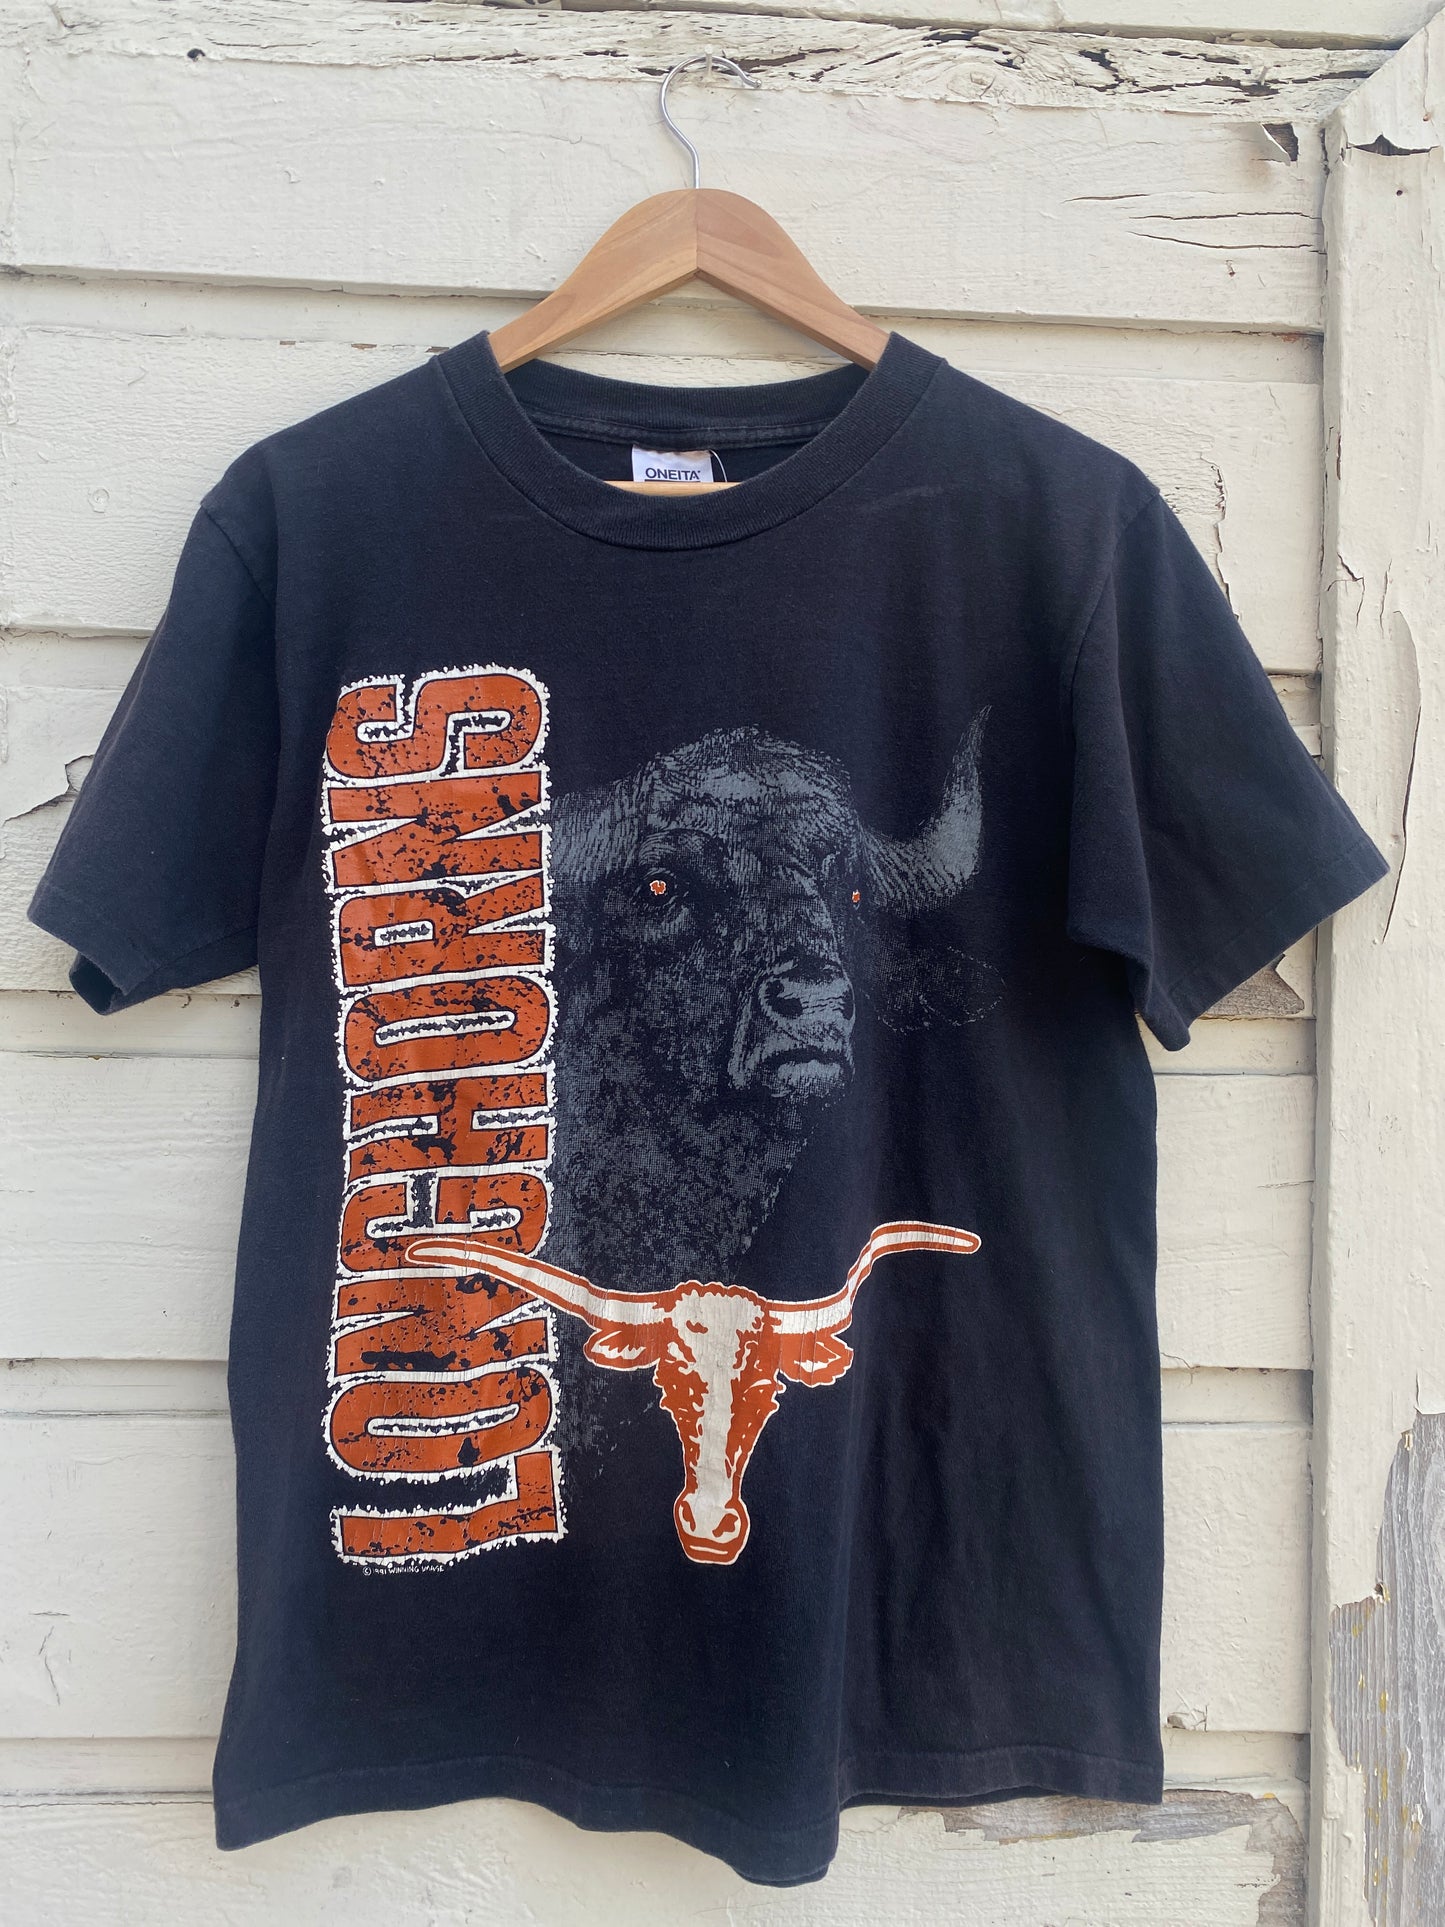 Vintage University Of Texas Austin UT Tshirt Medium/Large